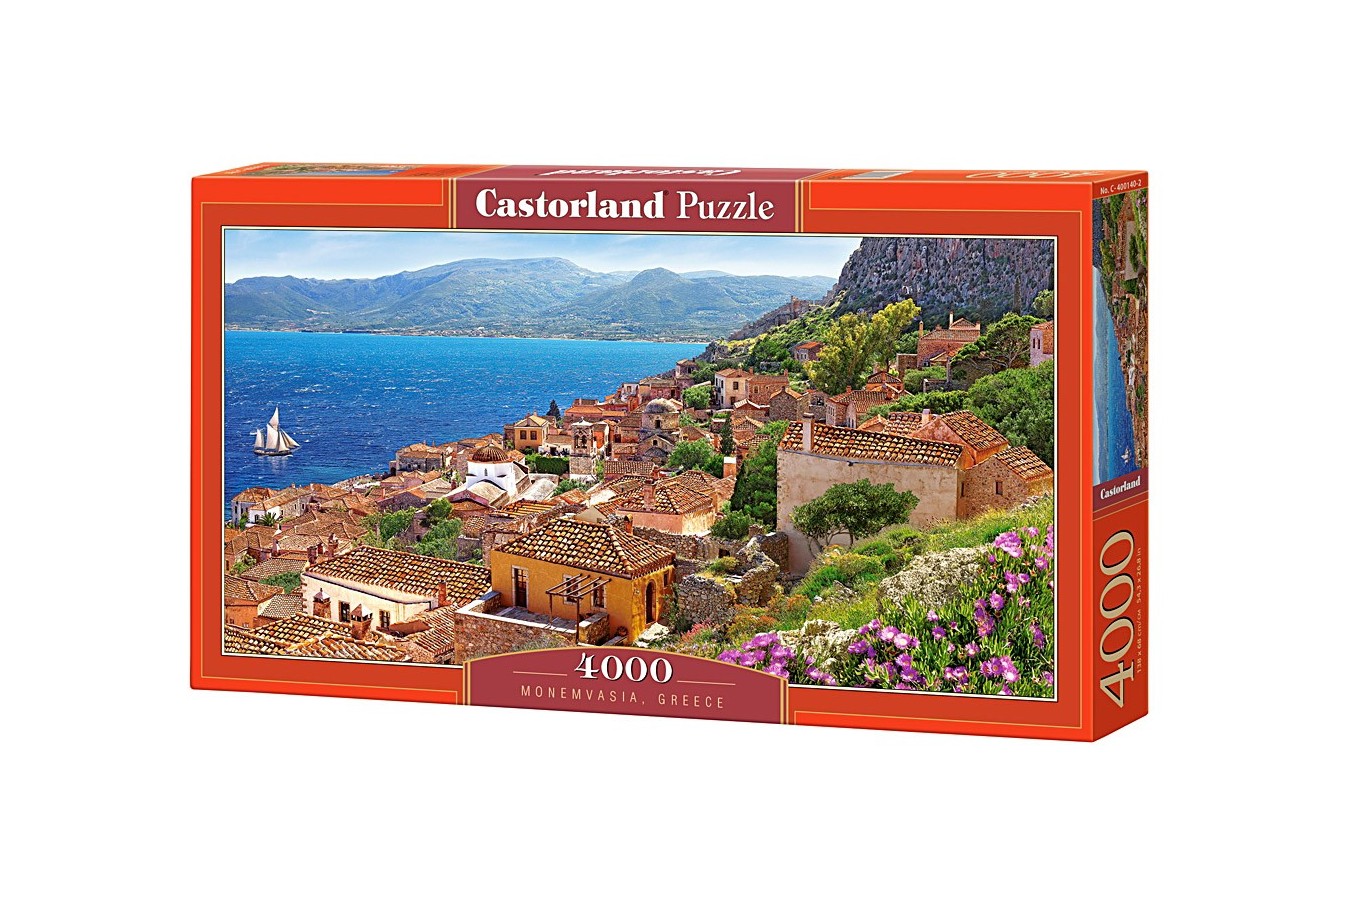 Puzzle Castorland - Monemvasia Greece, 4000 piese